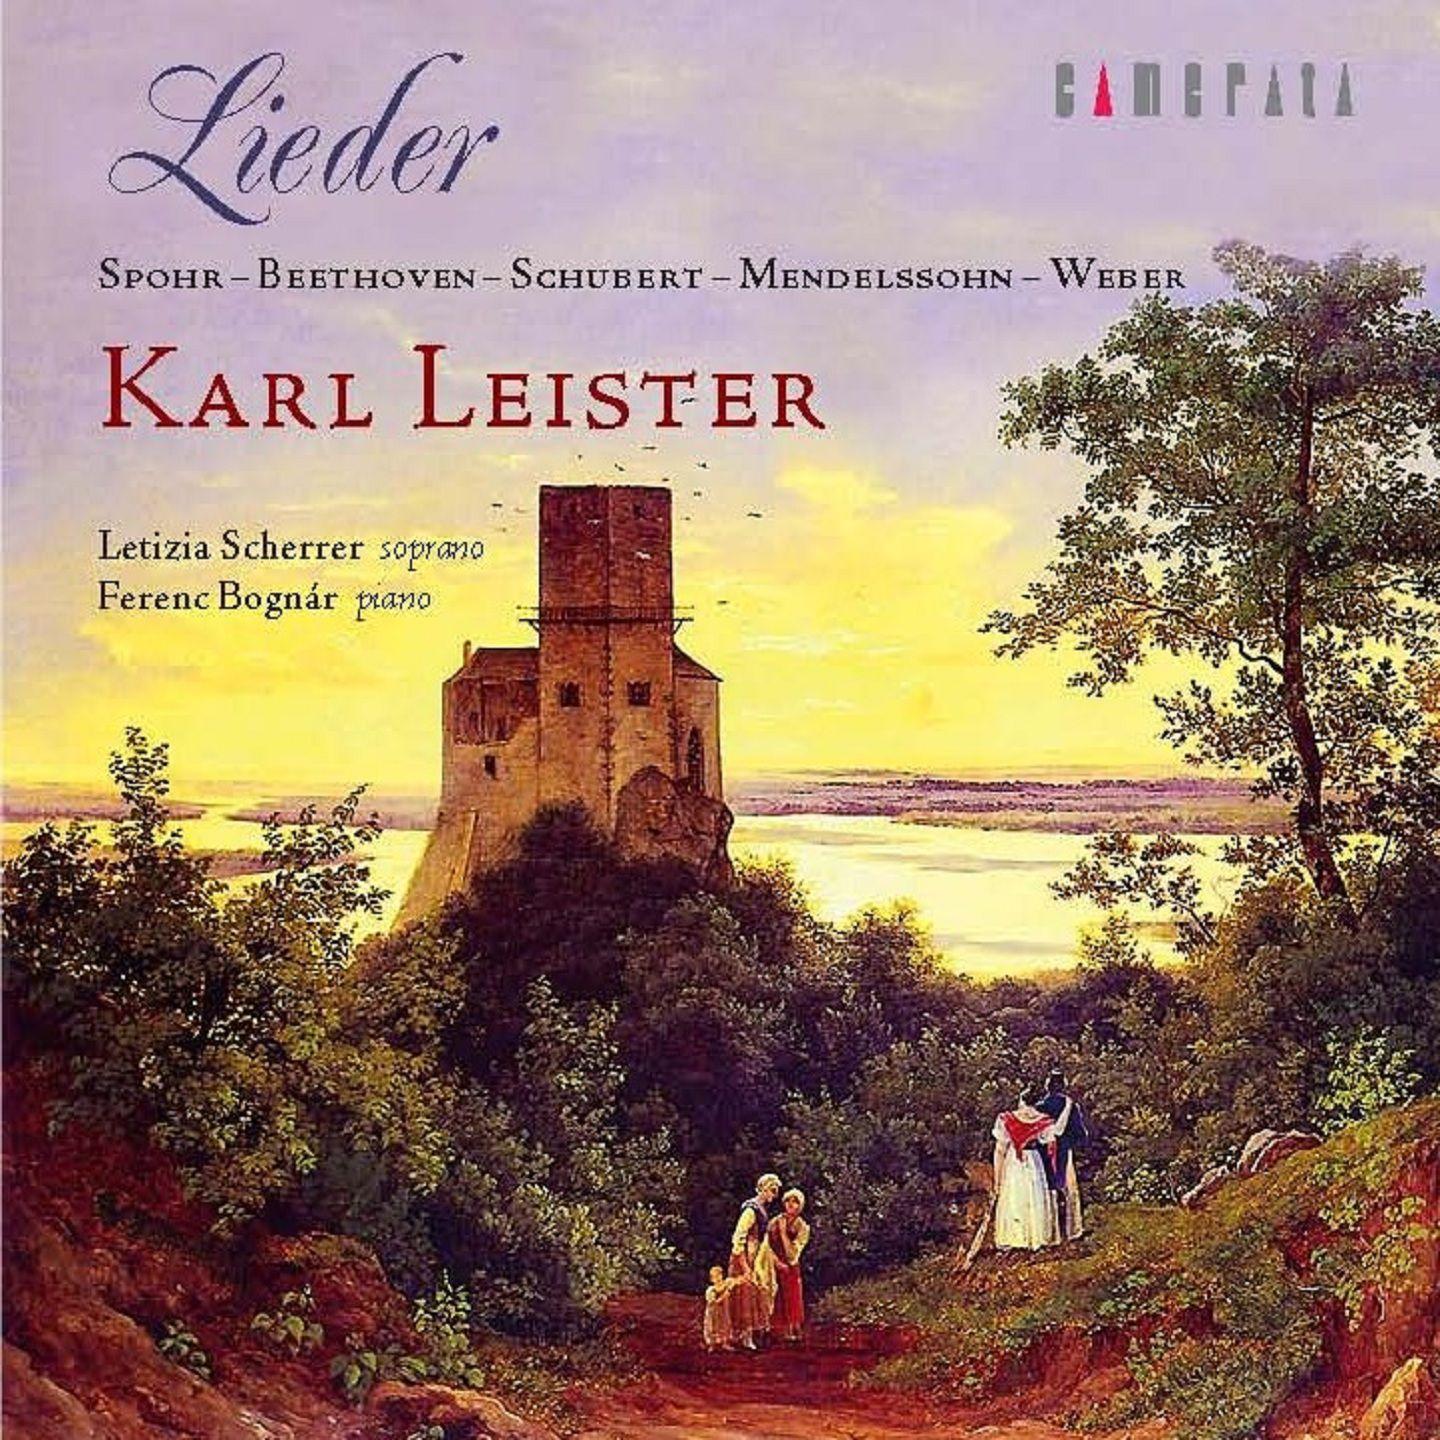 Lieder: Karl Leister